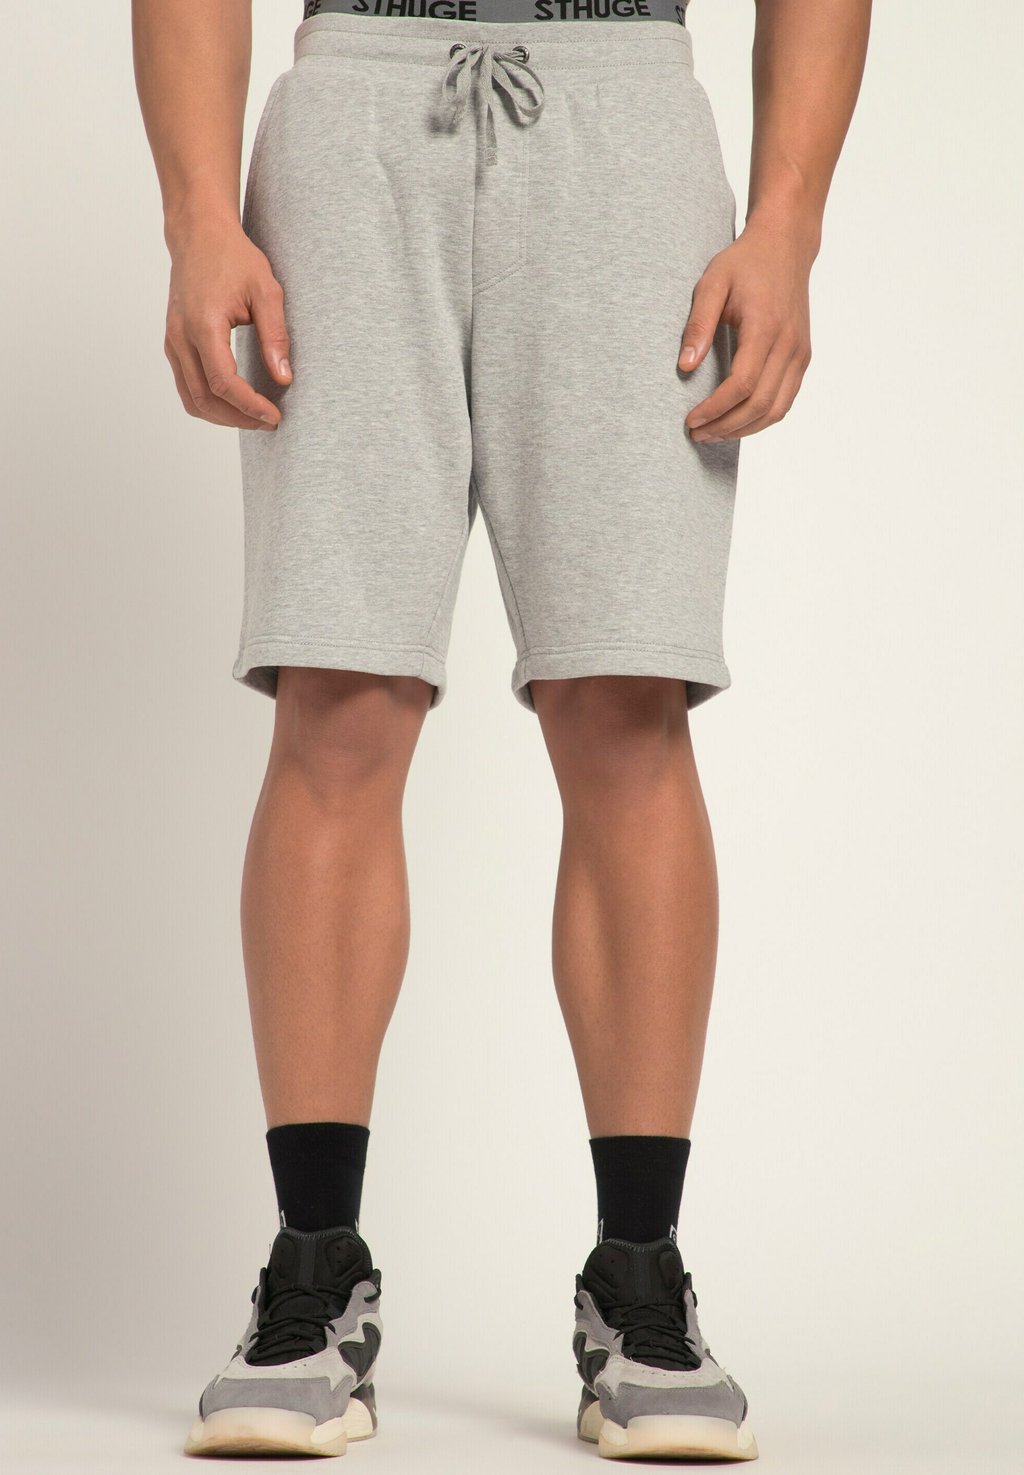 Спортивные брюки STHUGE, цвет grau melange брюки из ткани liliput цвет grau melange